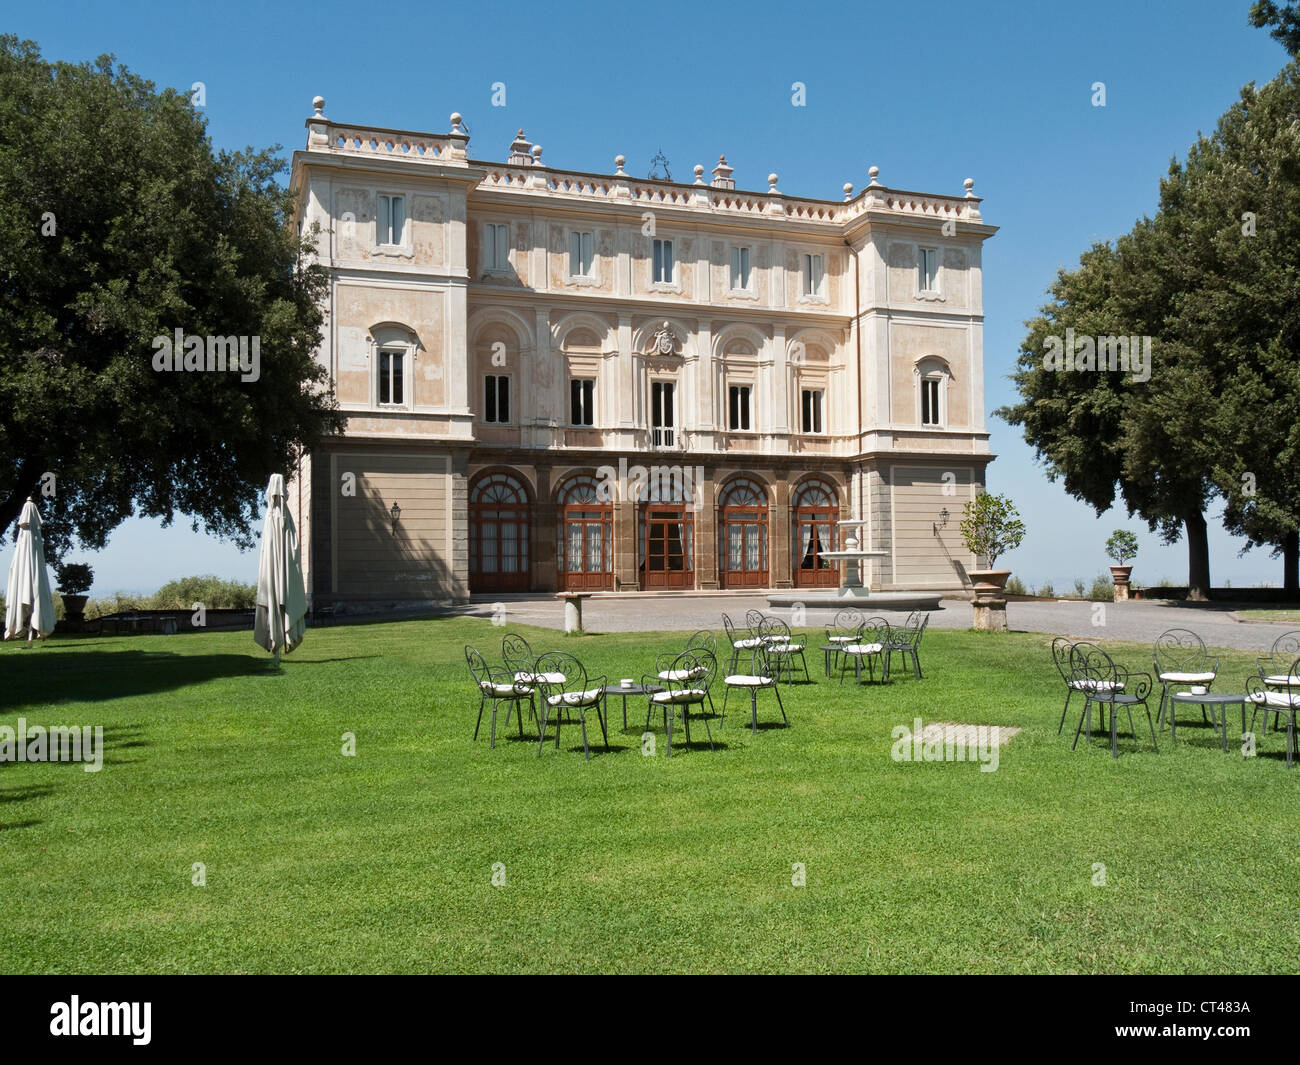 Park Hotel Villa Grazioli, Grottaferrata, Rome, Italy Stock Photo - Alamy